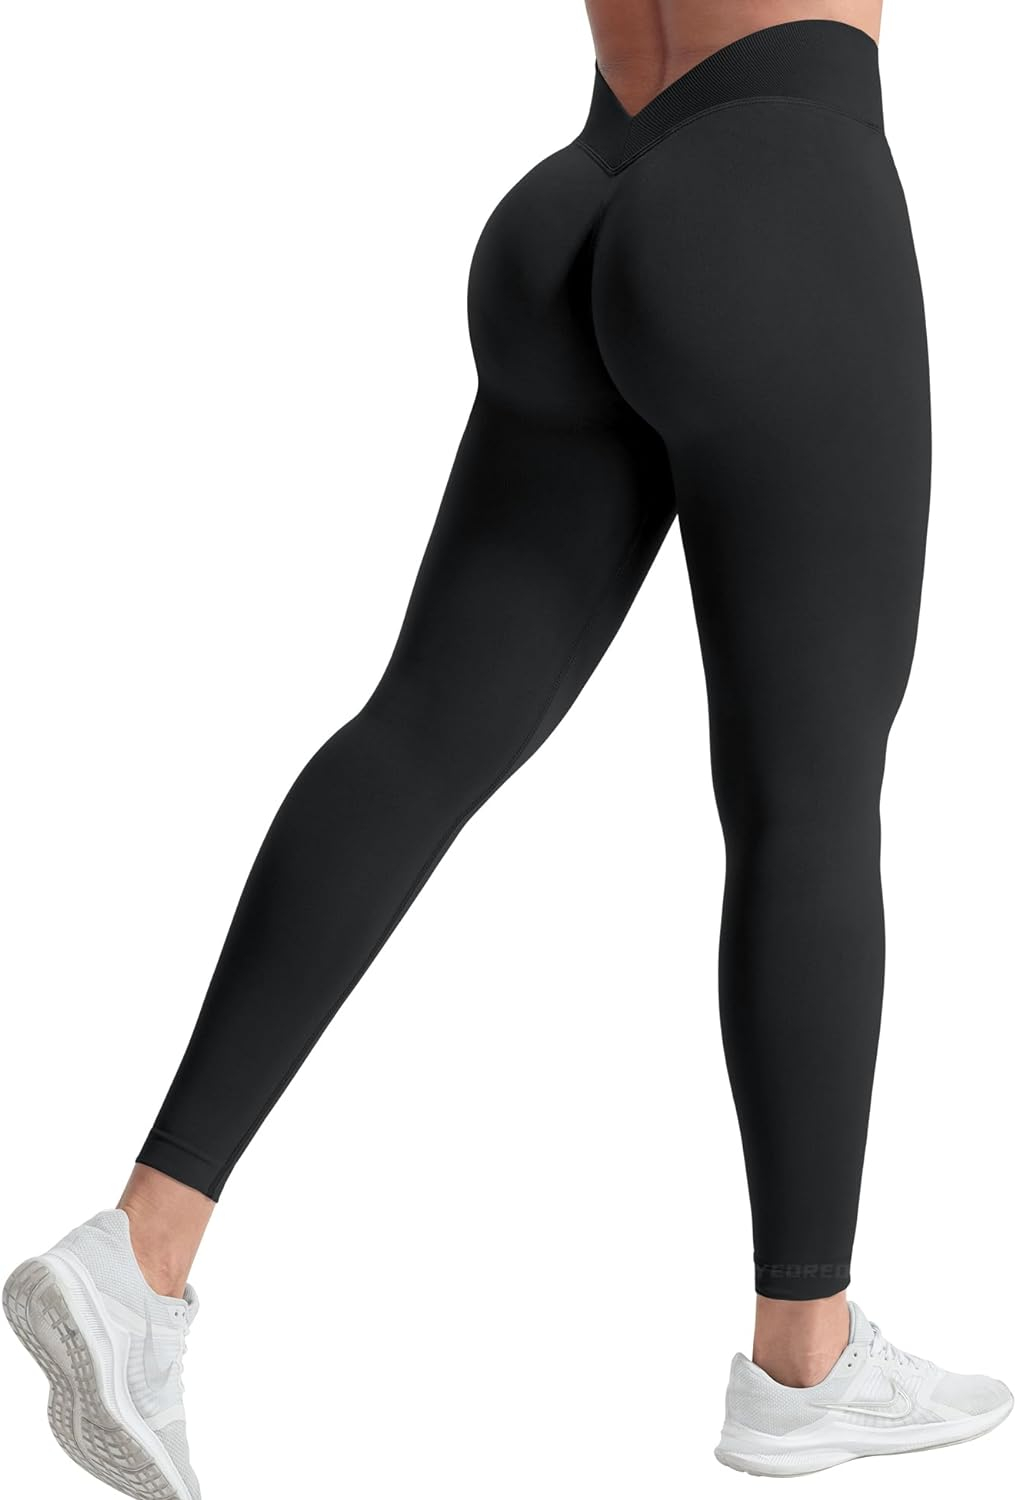 YEOREO Liz Scrunch Workout Leggings for Women High Waisted Butt Lifting V Back Waist Seamless Gym Yoga Leggings